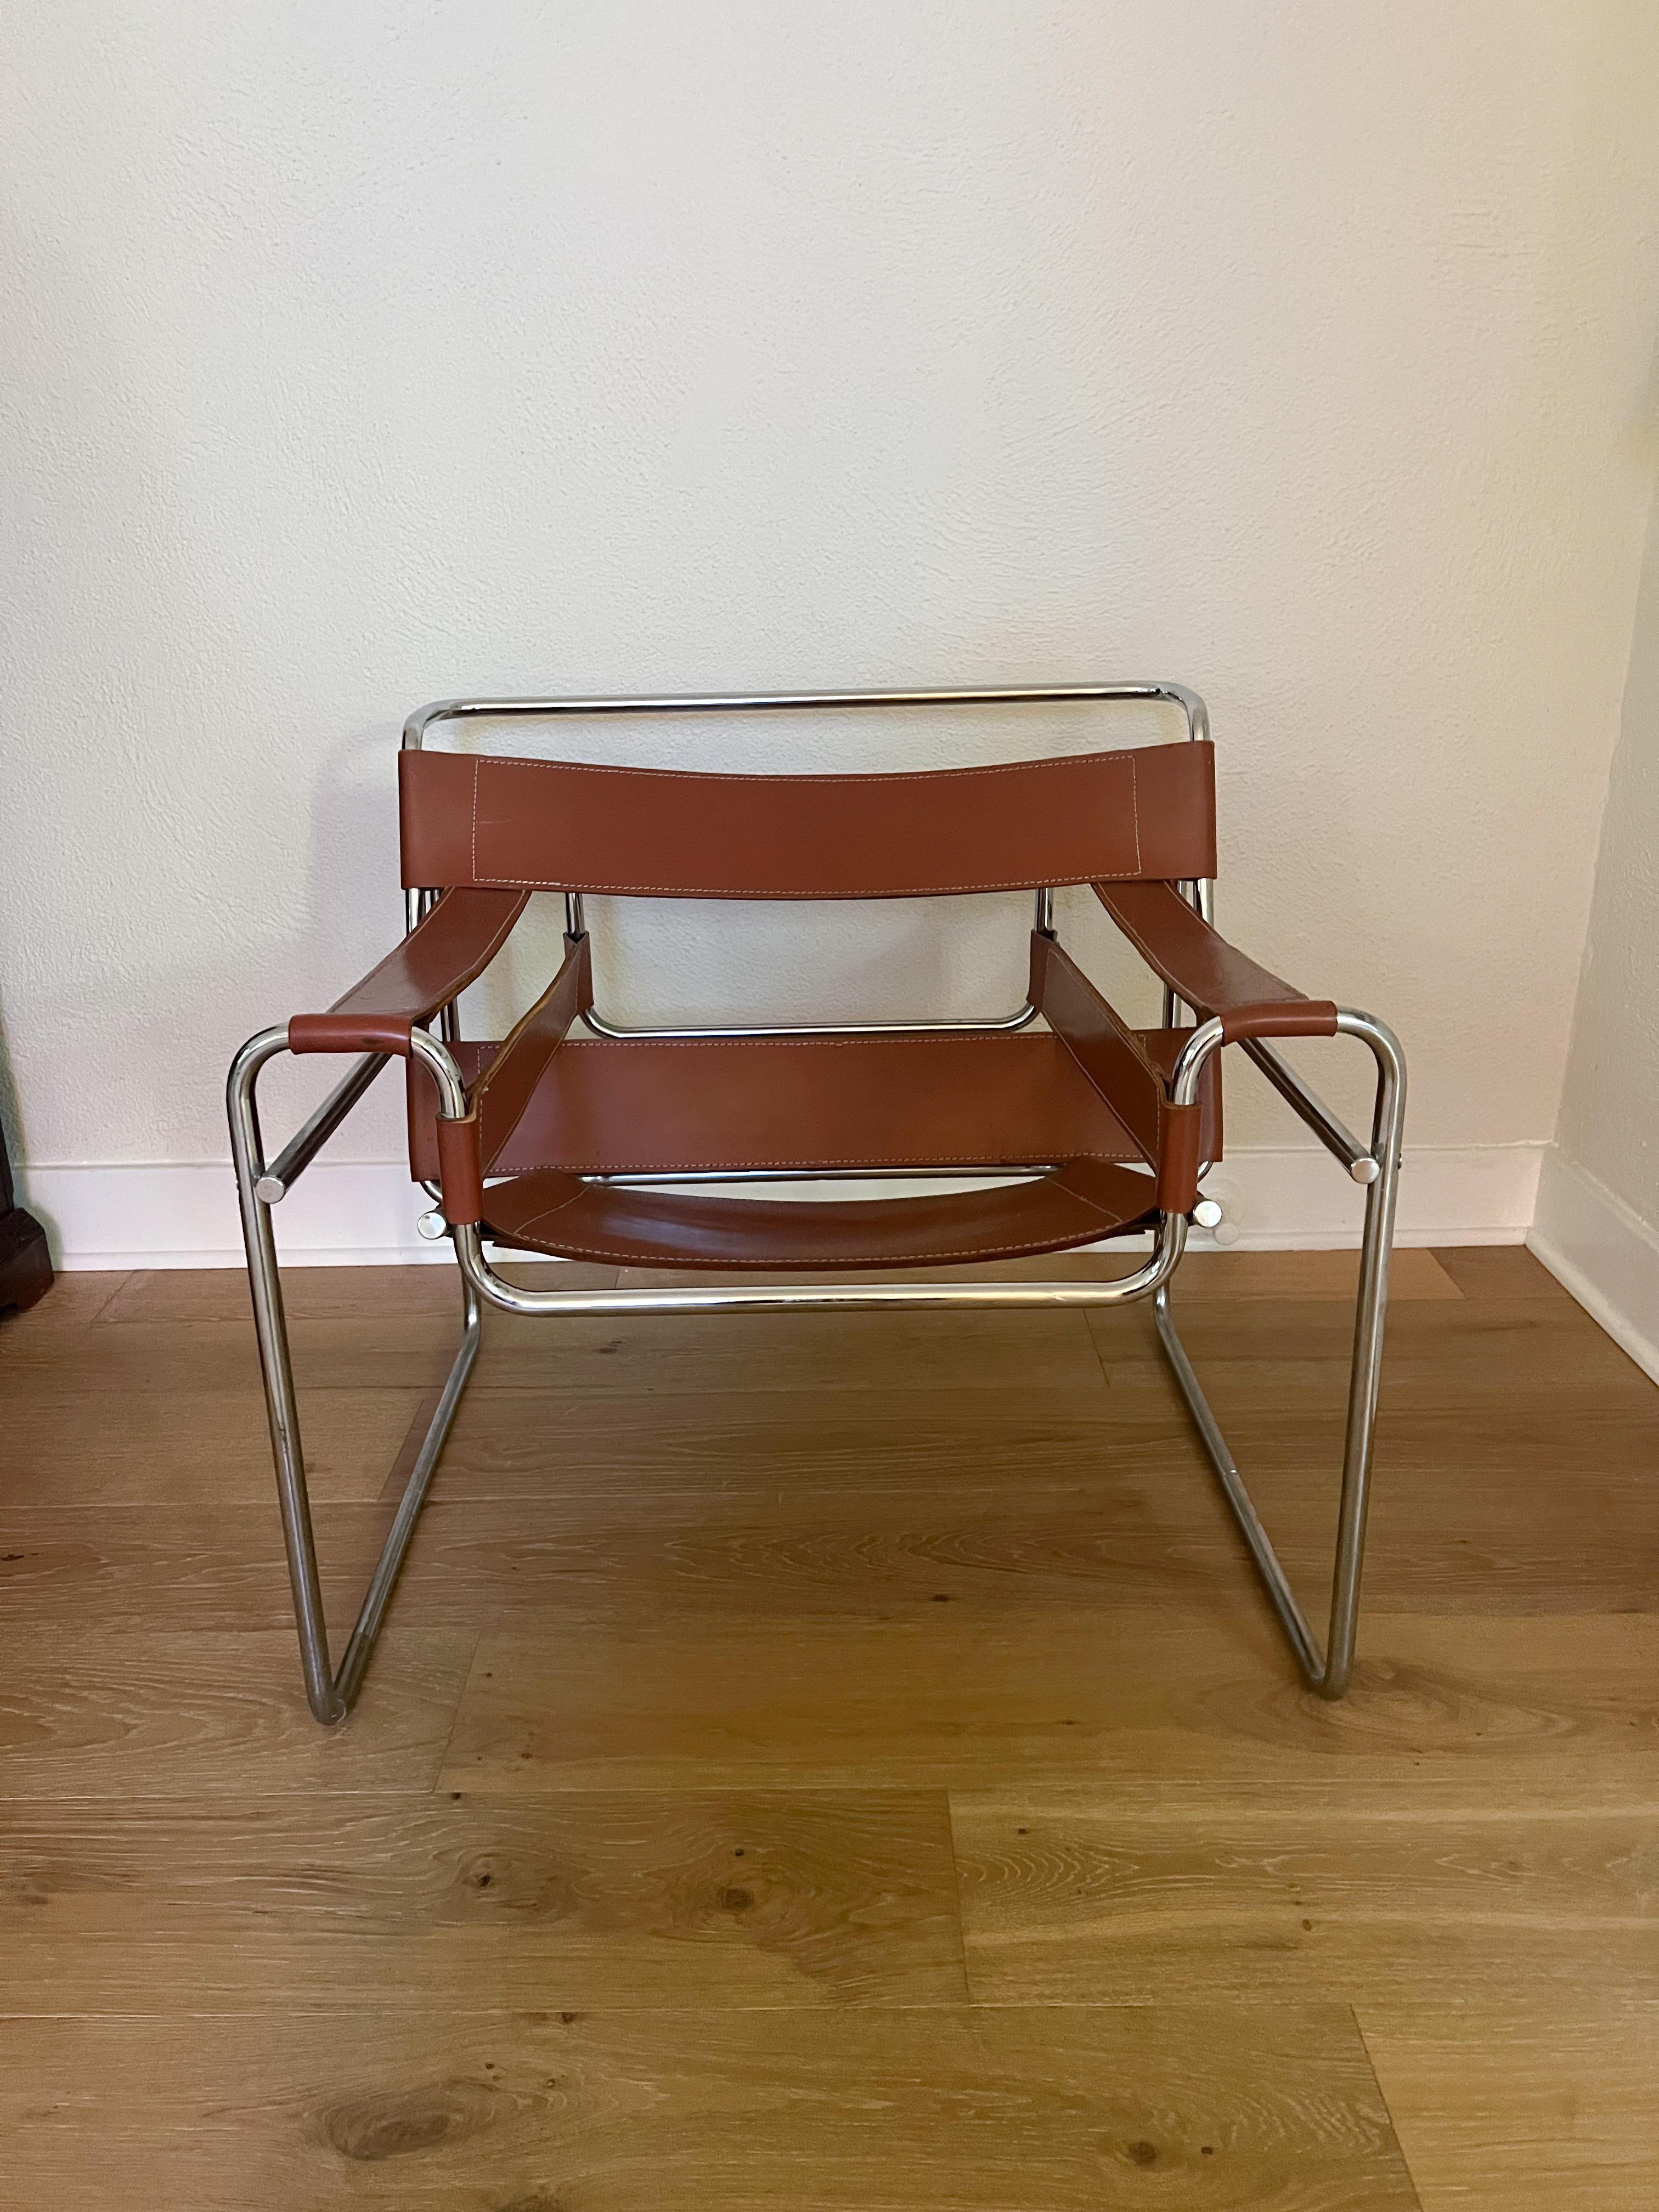 Présentation d'un chef-d'œuvre intemporel qui reprend l'esthétique classique du style Bauhaus de Marcel Breuer - une chaise longue inspirée du design emblématique de Wassily. Sa silhouette minimaliste est caractérisée par un cadre en acier tubulaire